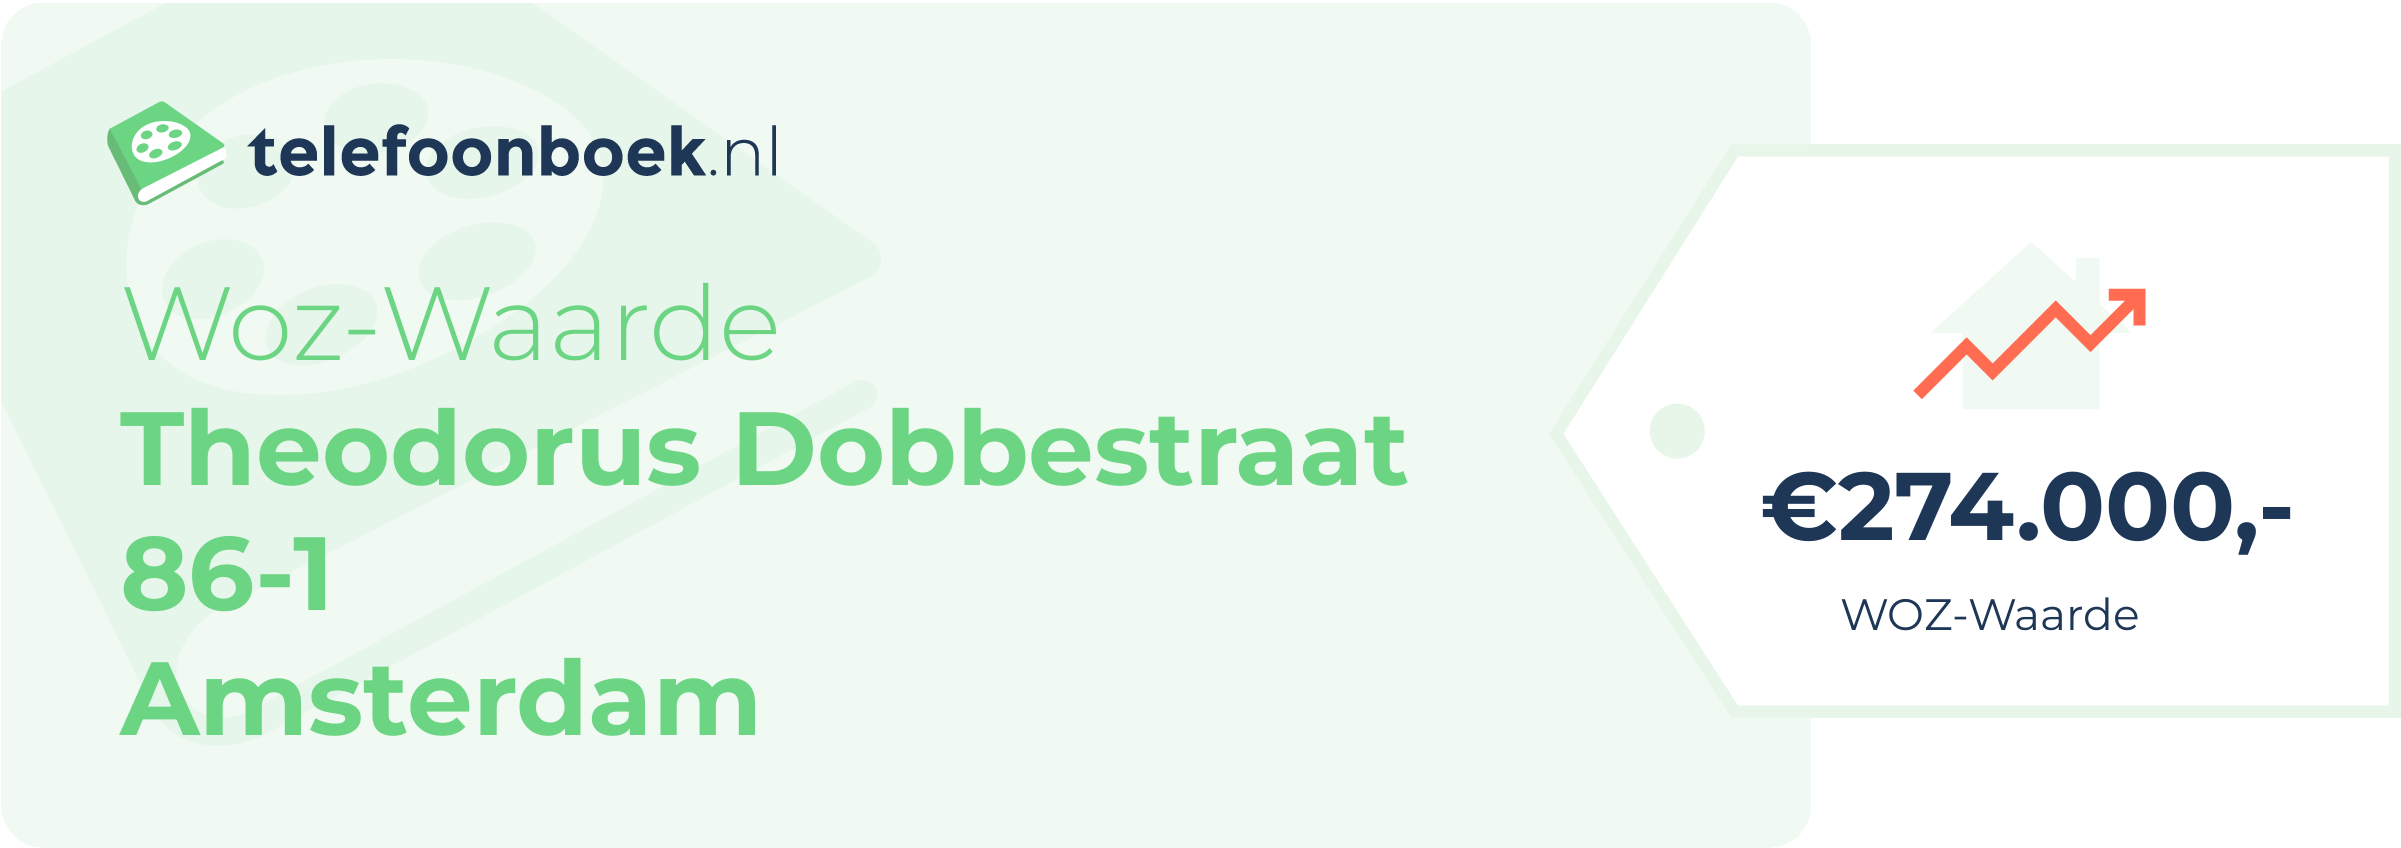 WOZ-waarde Theodorus Dobbestraat 86-1 Amsterdam